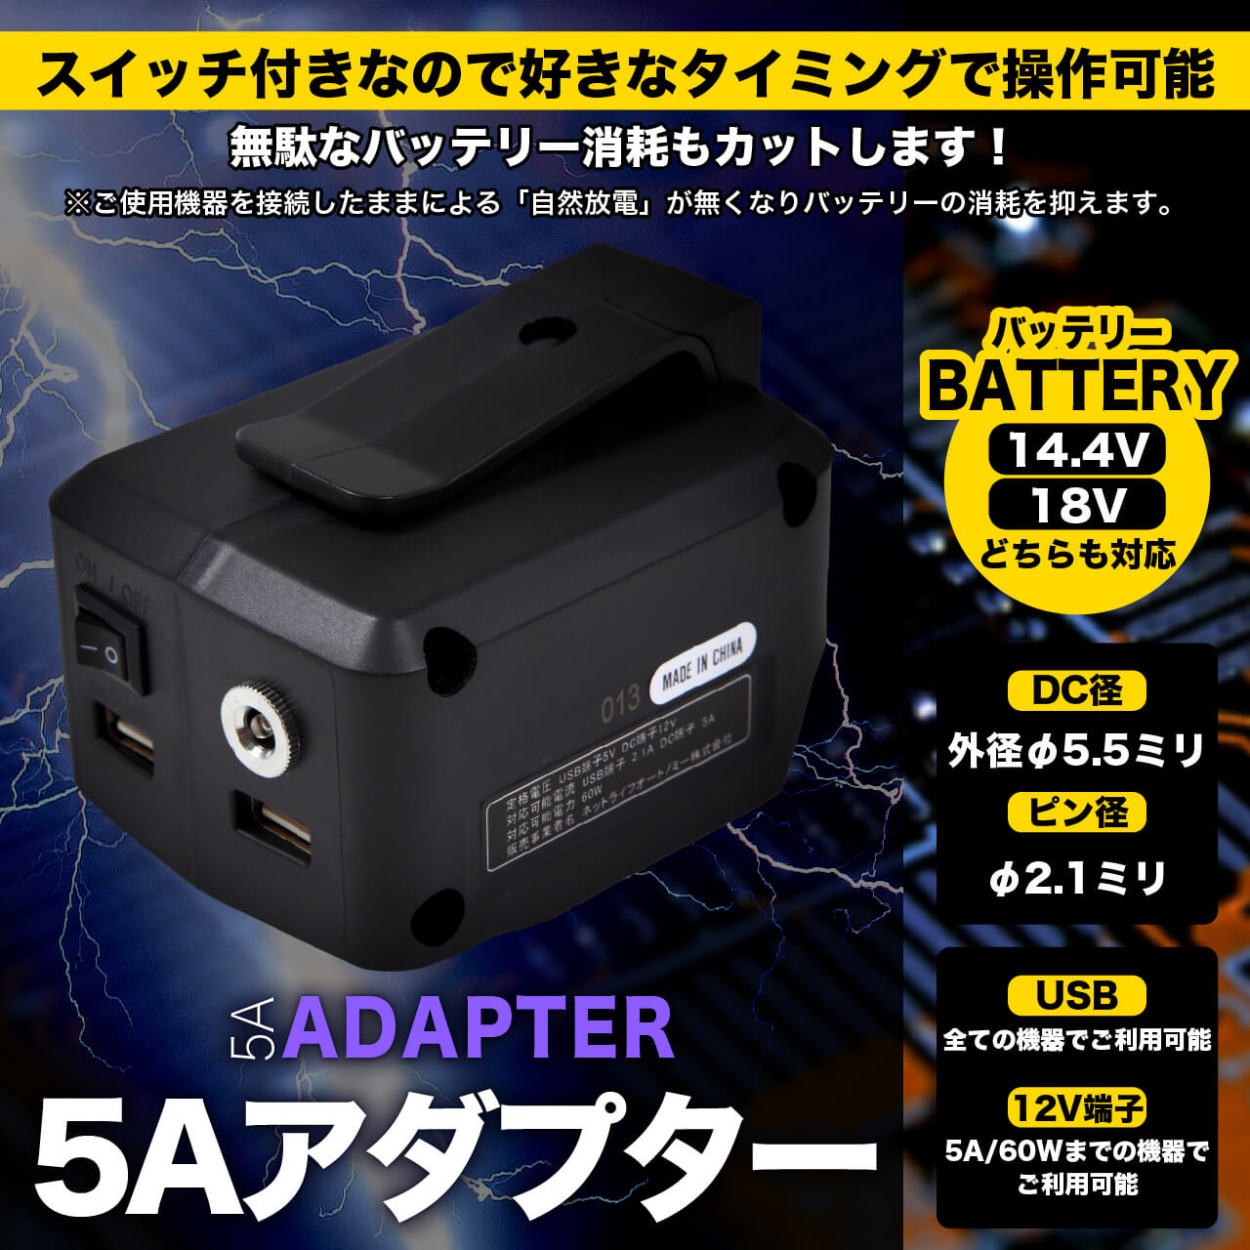 マキタ USBアダプター 12V出力搭載 ADP05互換 5A対応 スイッチ搭載 100v出力転用可 14.4v 18v対応  :XN-M7M2-VP0G:LED作業照明・NLAセレクト - 通販 - Yahoo!ショッピング